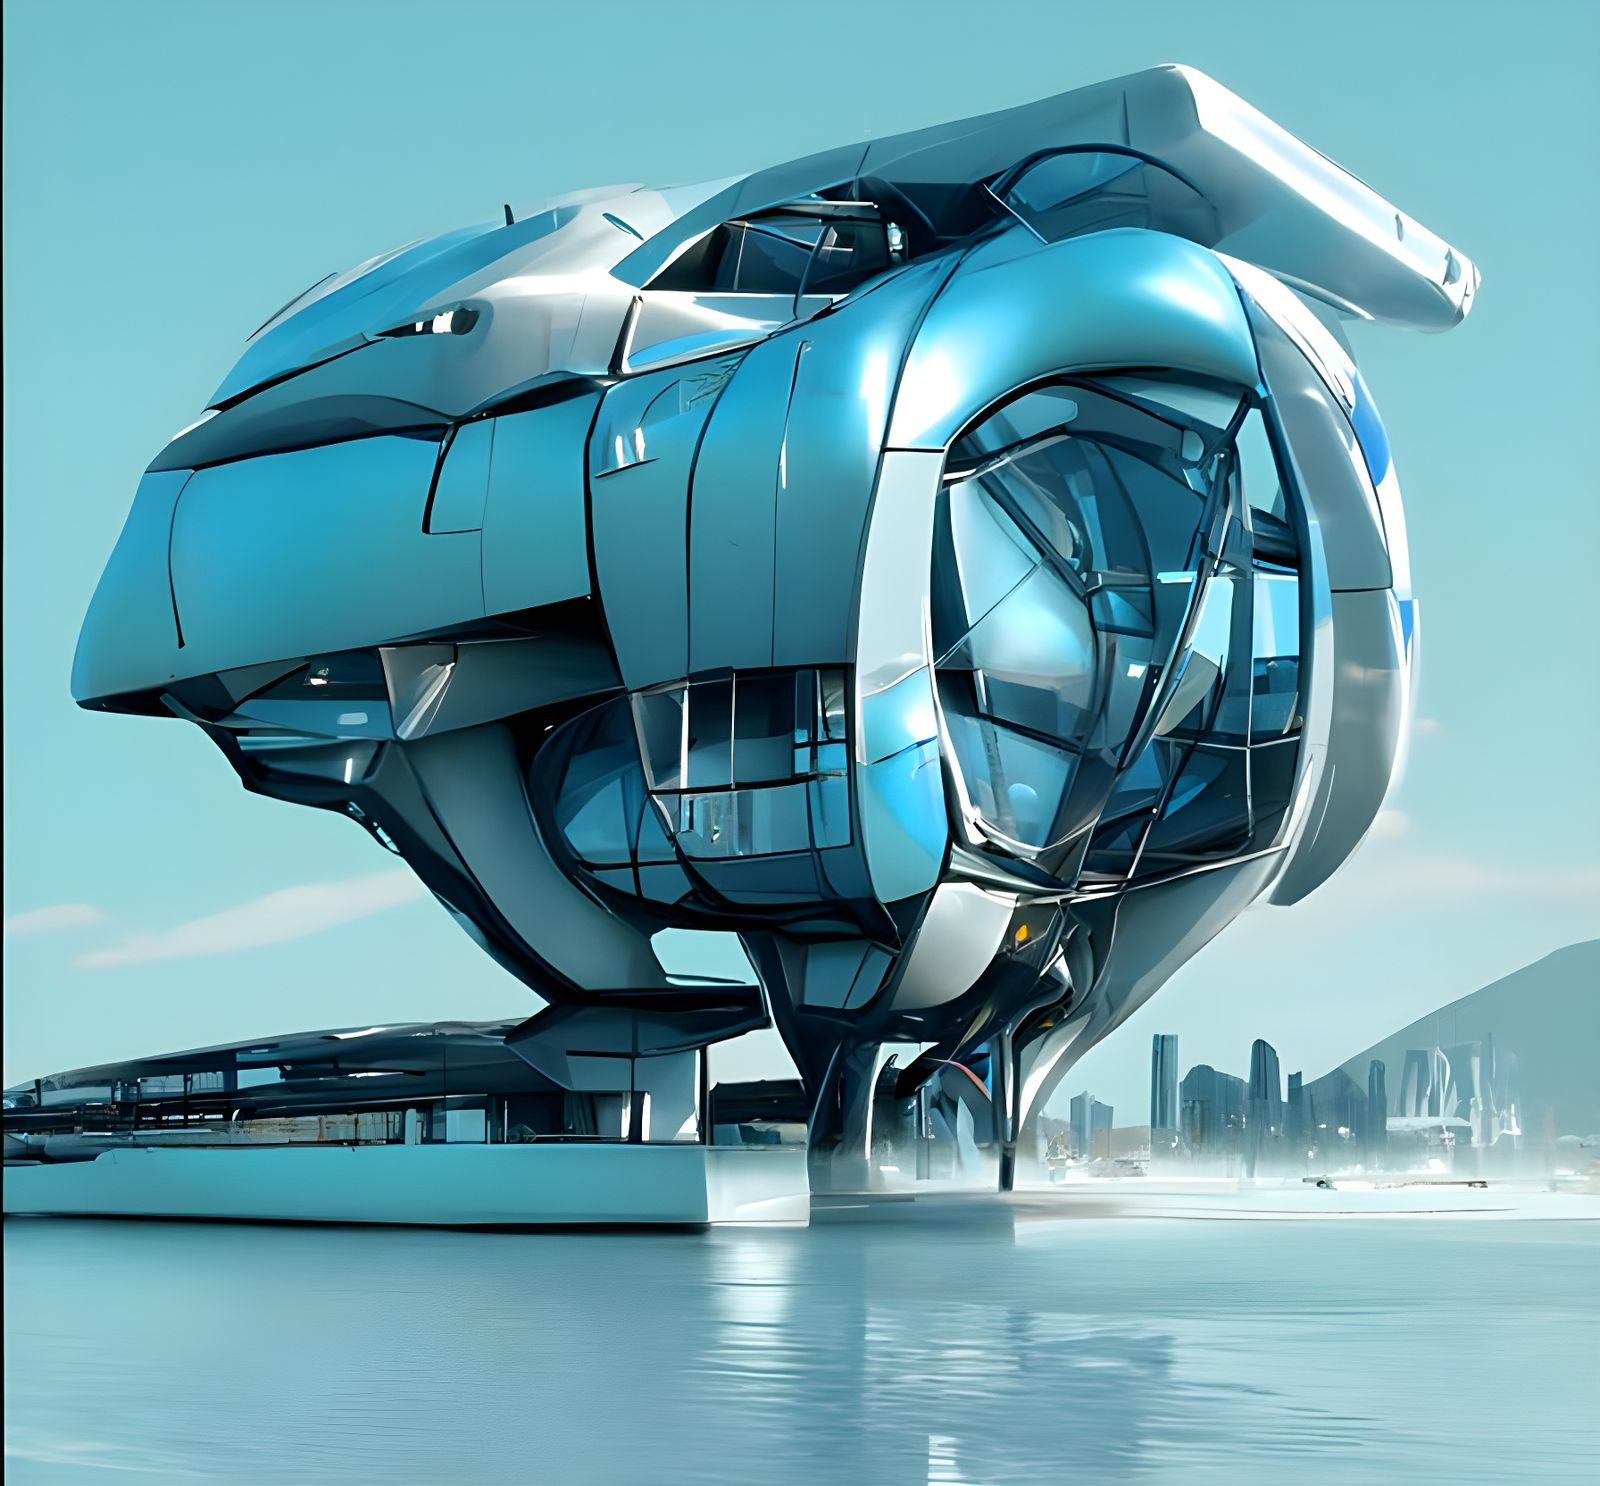 sci fi building concept art